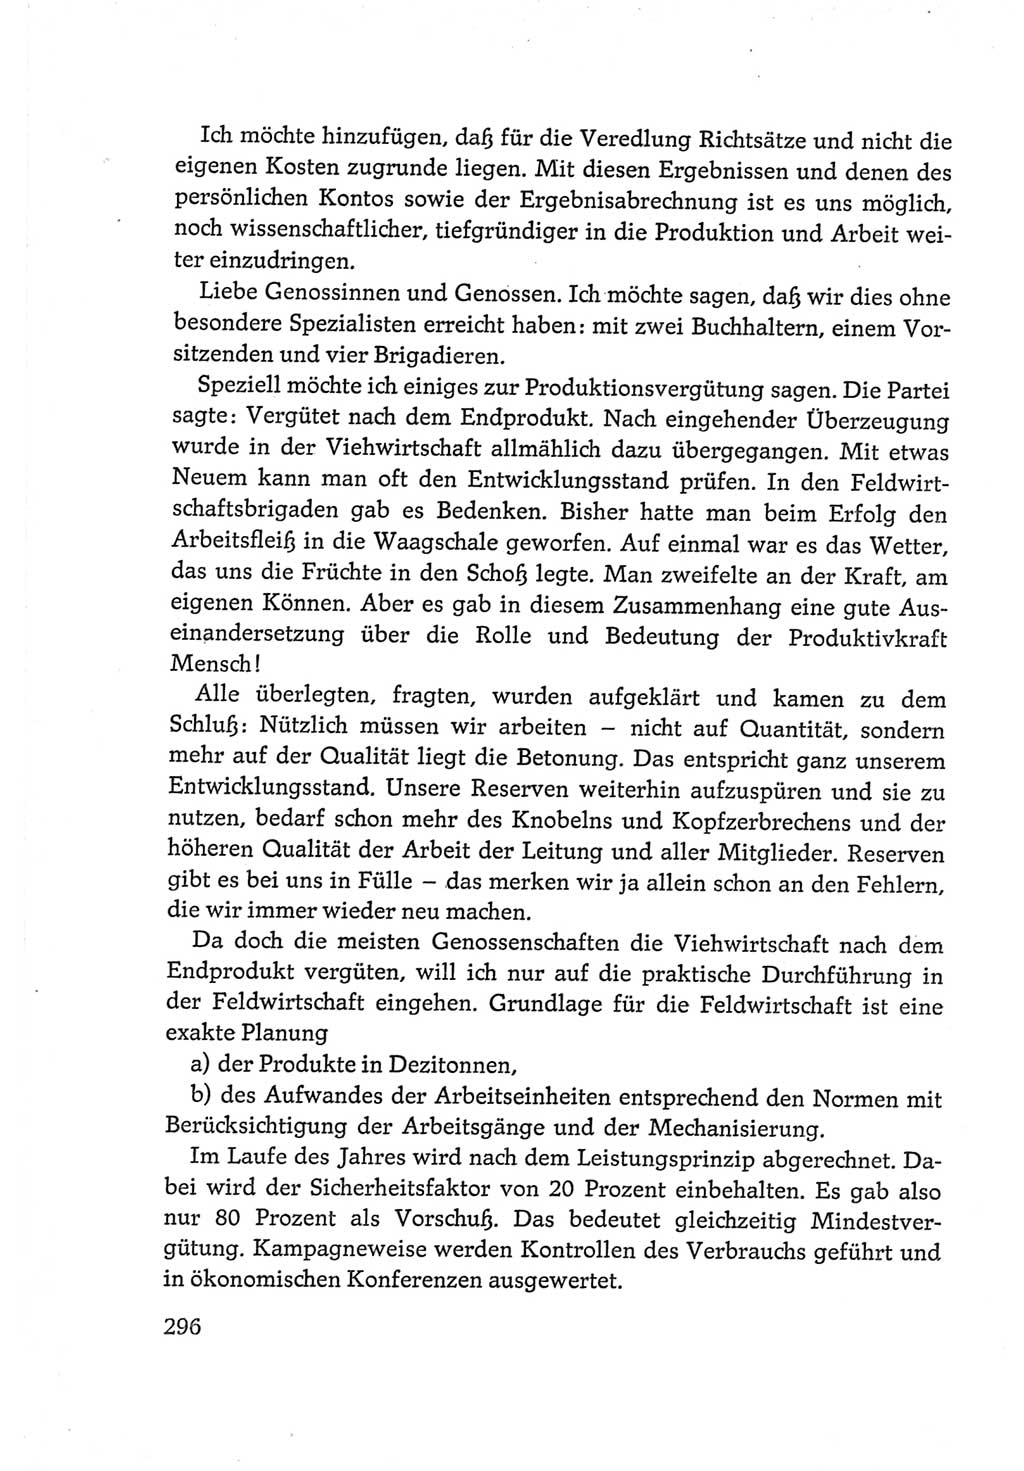 Protokoll der Verhandlungen des Ⅵ. Parteitages der Sozialistischen Einheitspartei Deutschlands (SED) [Deutsche Demokratische Republik (DDR)] 1963, Band Ⅲ, Seite 296 (Prot. Verh. Ⅵ. PT SED DDR 1963, Bd. Ⅲ, S. 296)